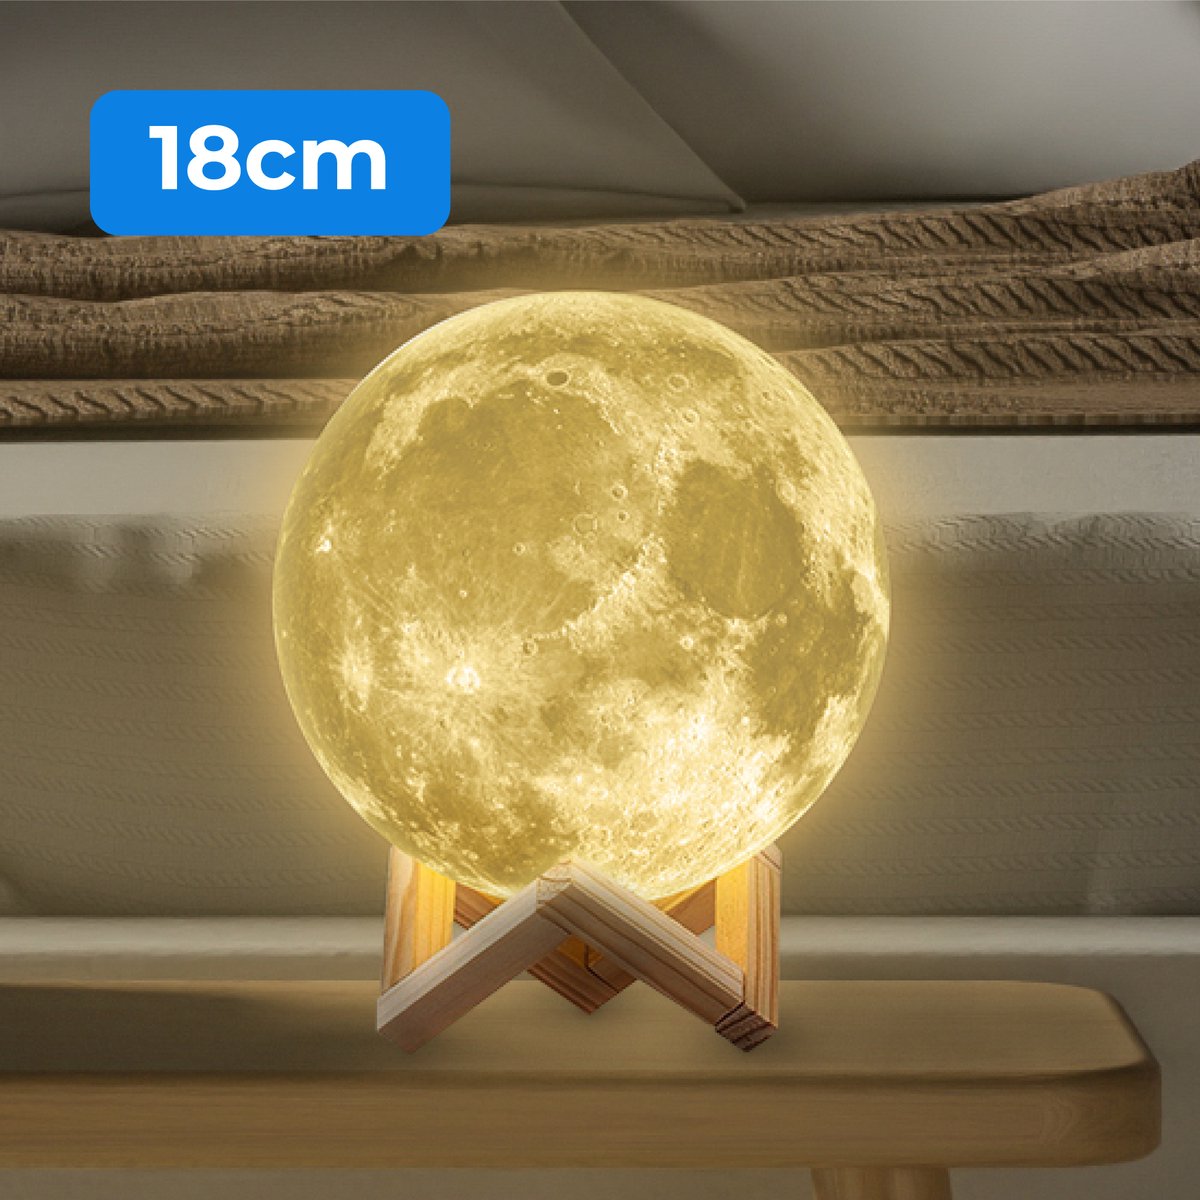 Nuvance - Maanlamp 3D Tafellamp - 18 cm - Warm Wit - Maan Lamp - Moon Lamp - Maan Lampje Babykamer - Nachtlampje Kinderen voor Slaapkamer